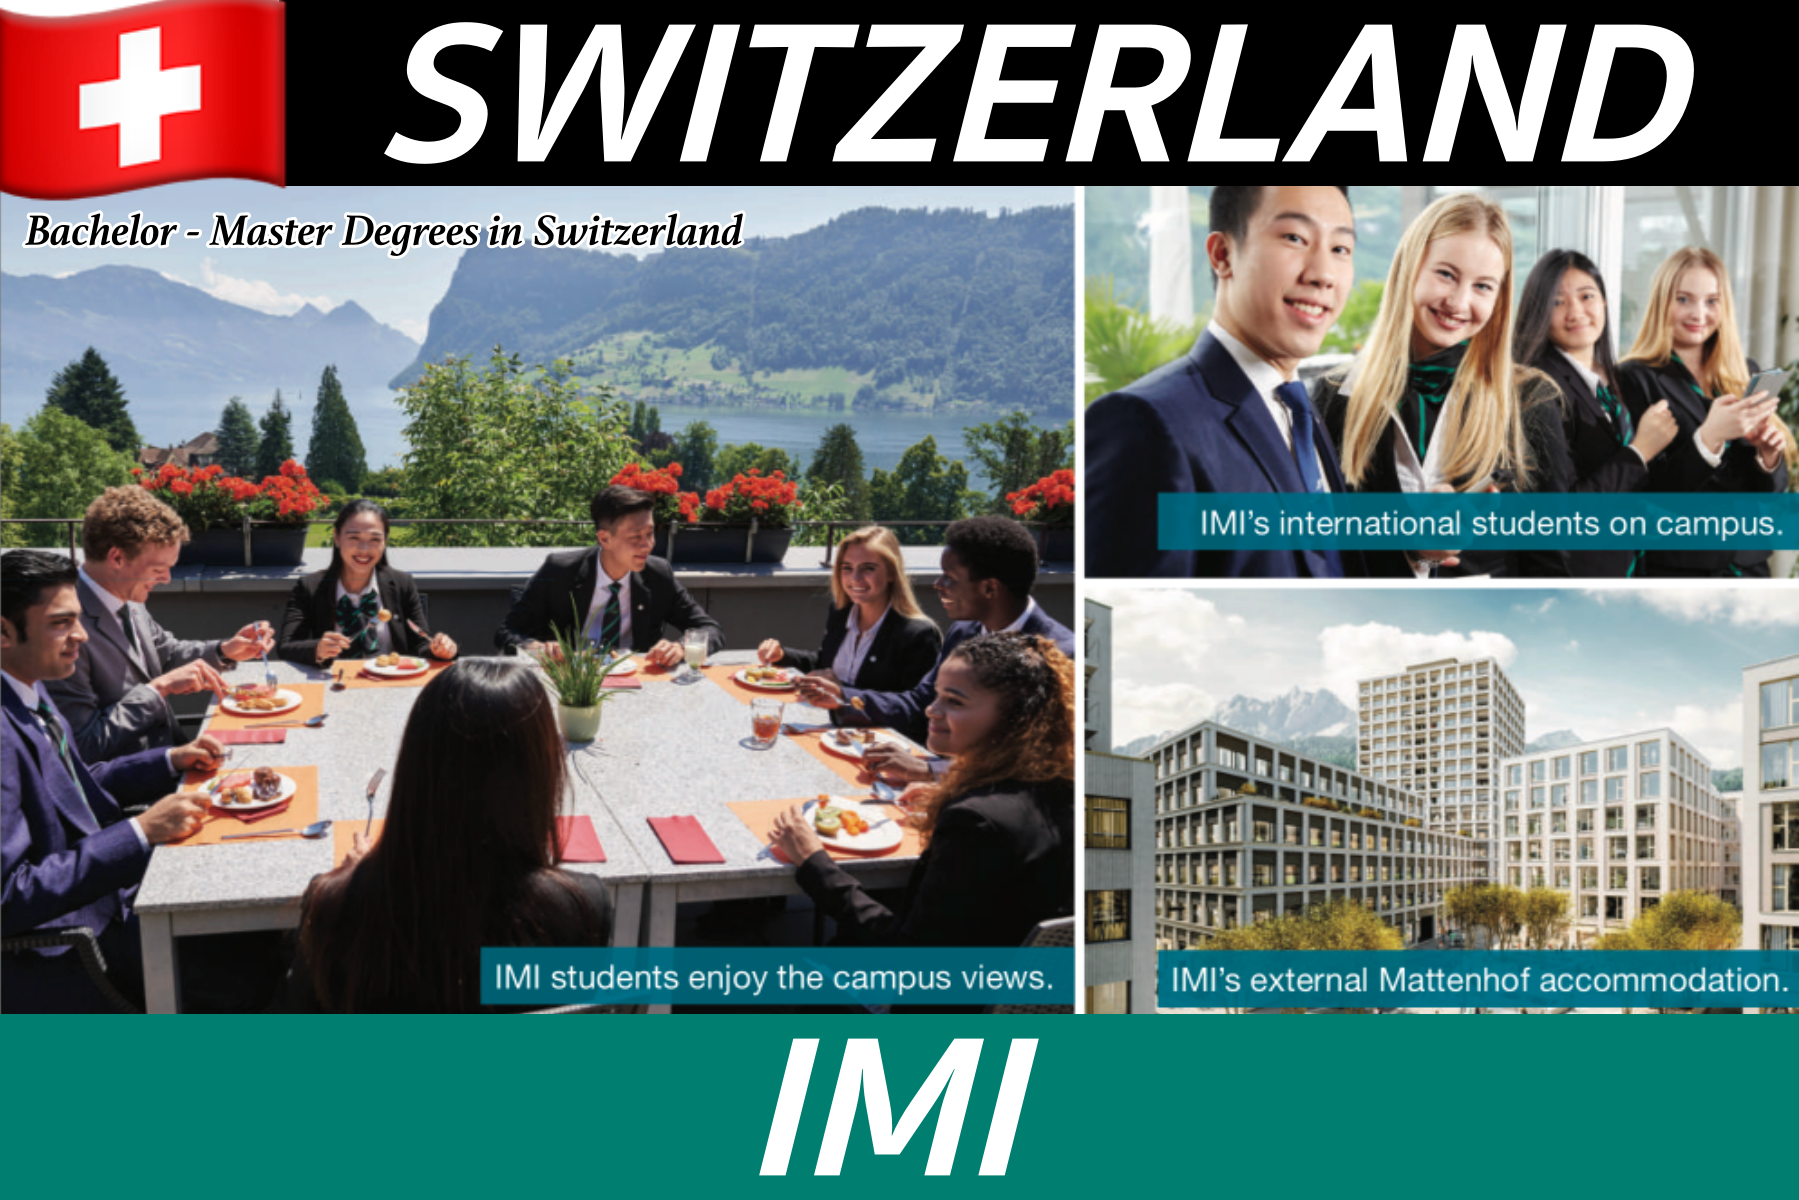 เรียน+ฝึกงานเงินเดือน 95,000! ป.ตรี-ป.โทที่ IMI, SWITZERLAND ทุนการศึกษาพิเศษสุดๆ!